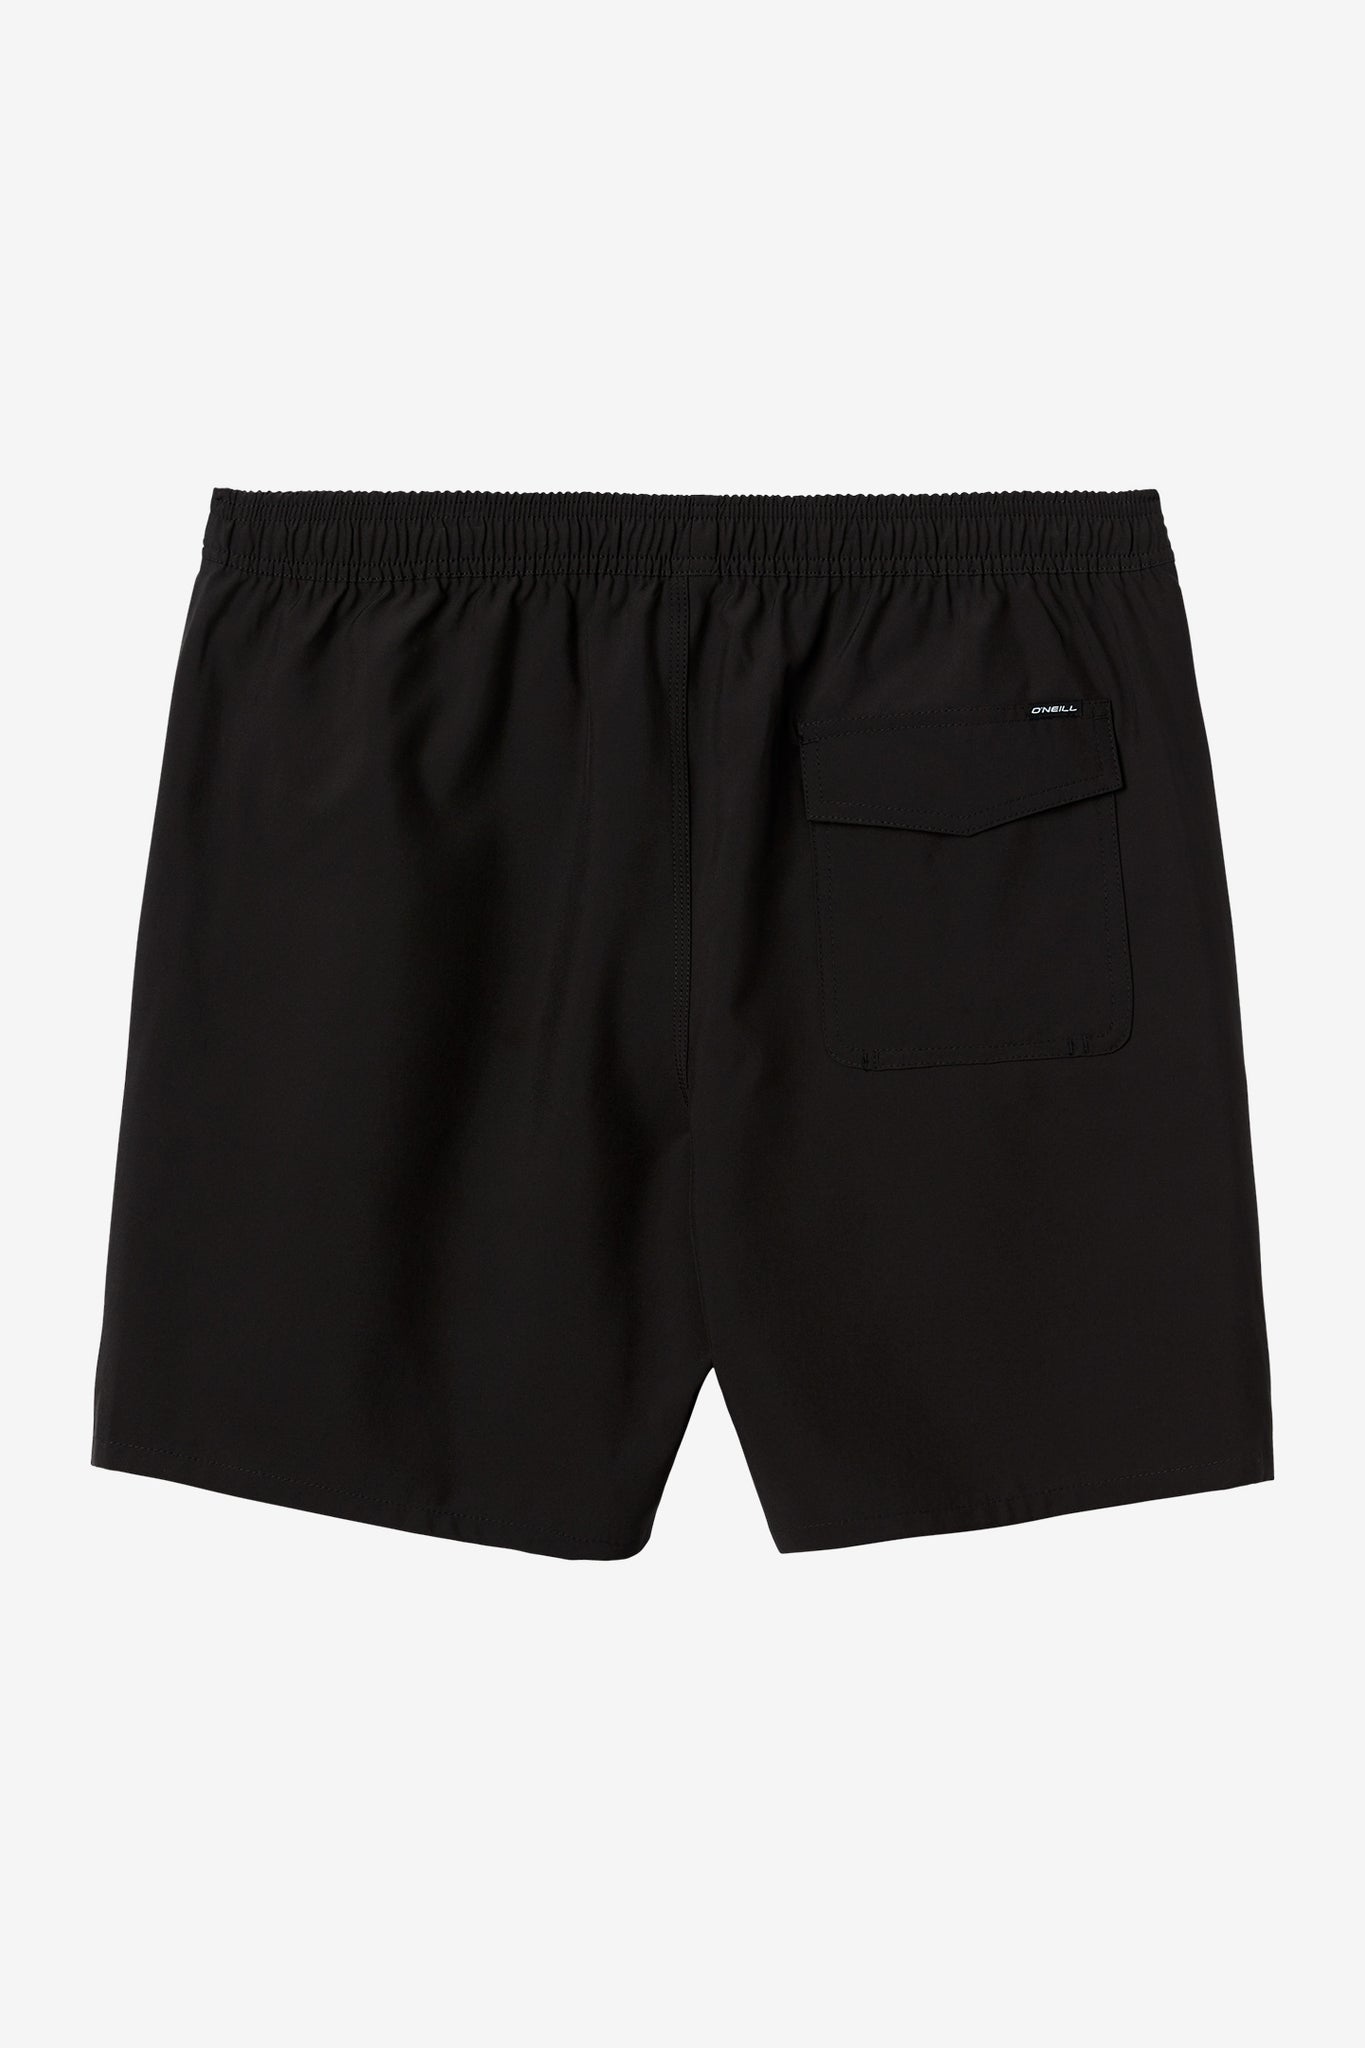 Premium Unisex Shorts- Black - Jolie Noire